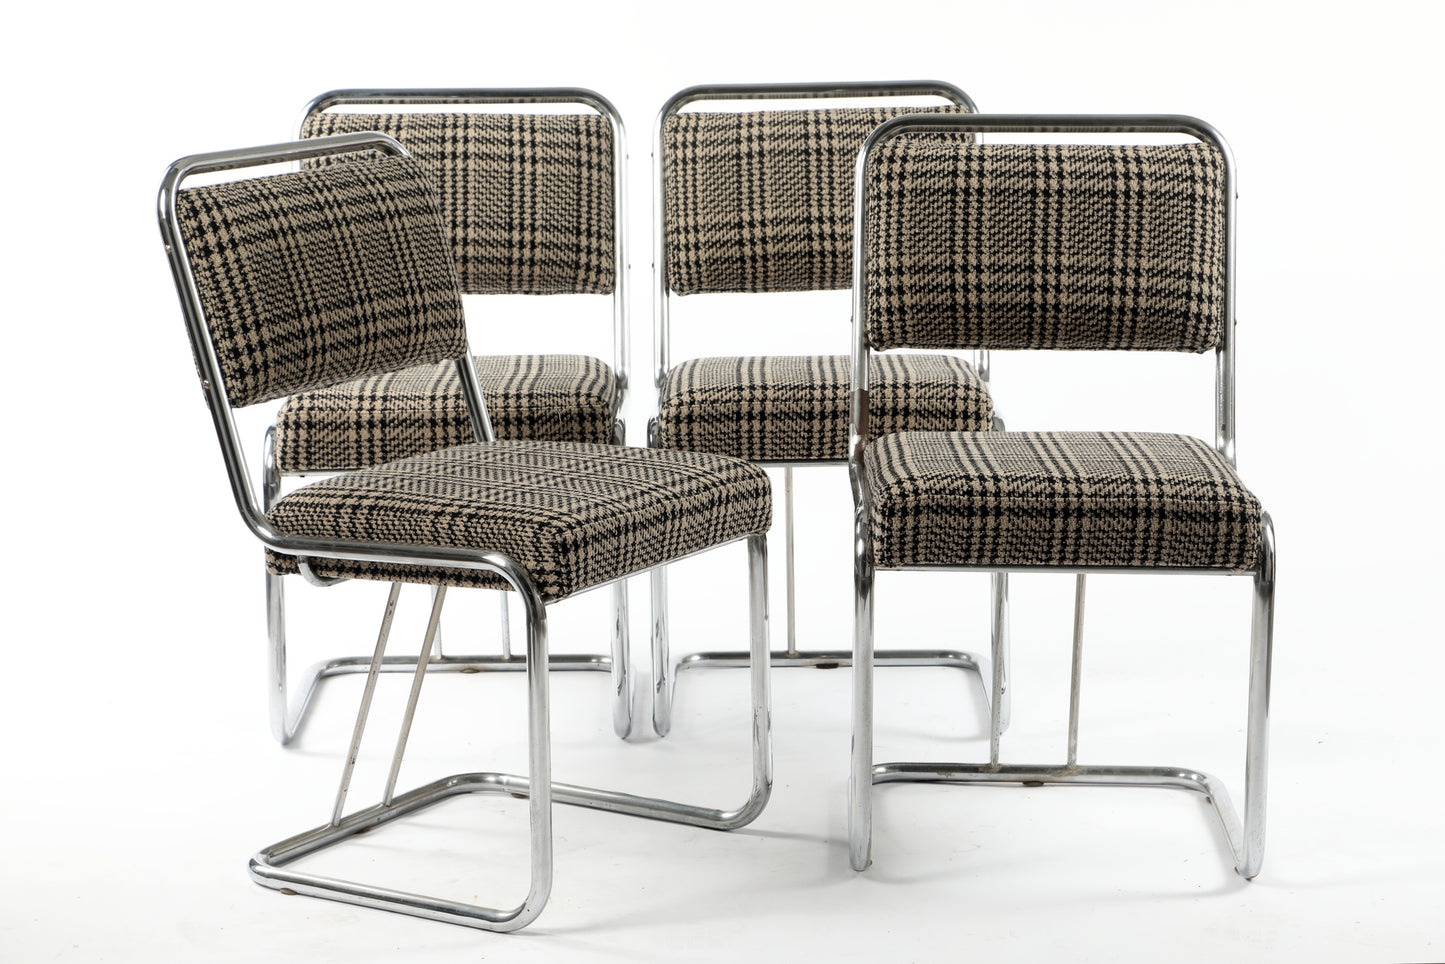 Quattro sedie anni 70 lana e acciaio